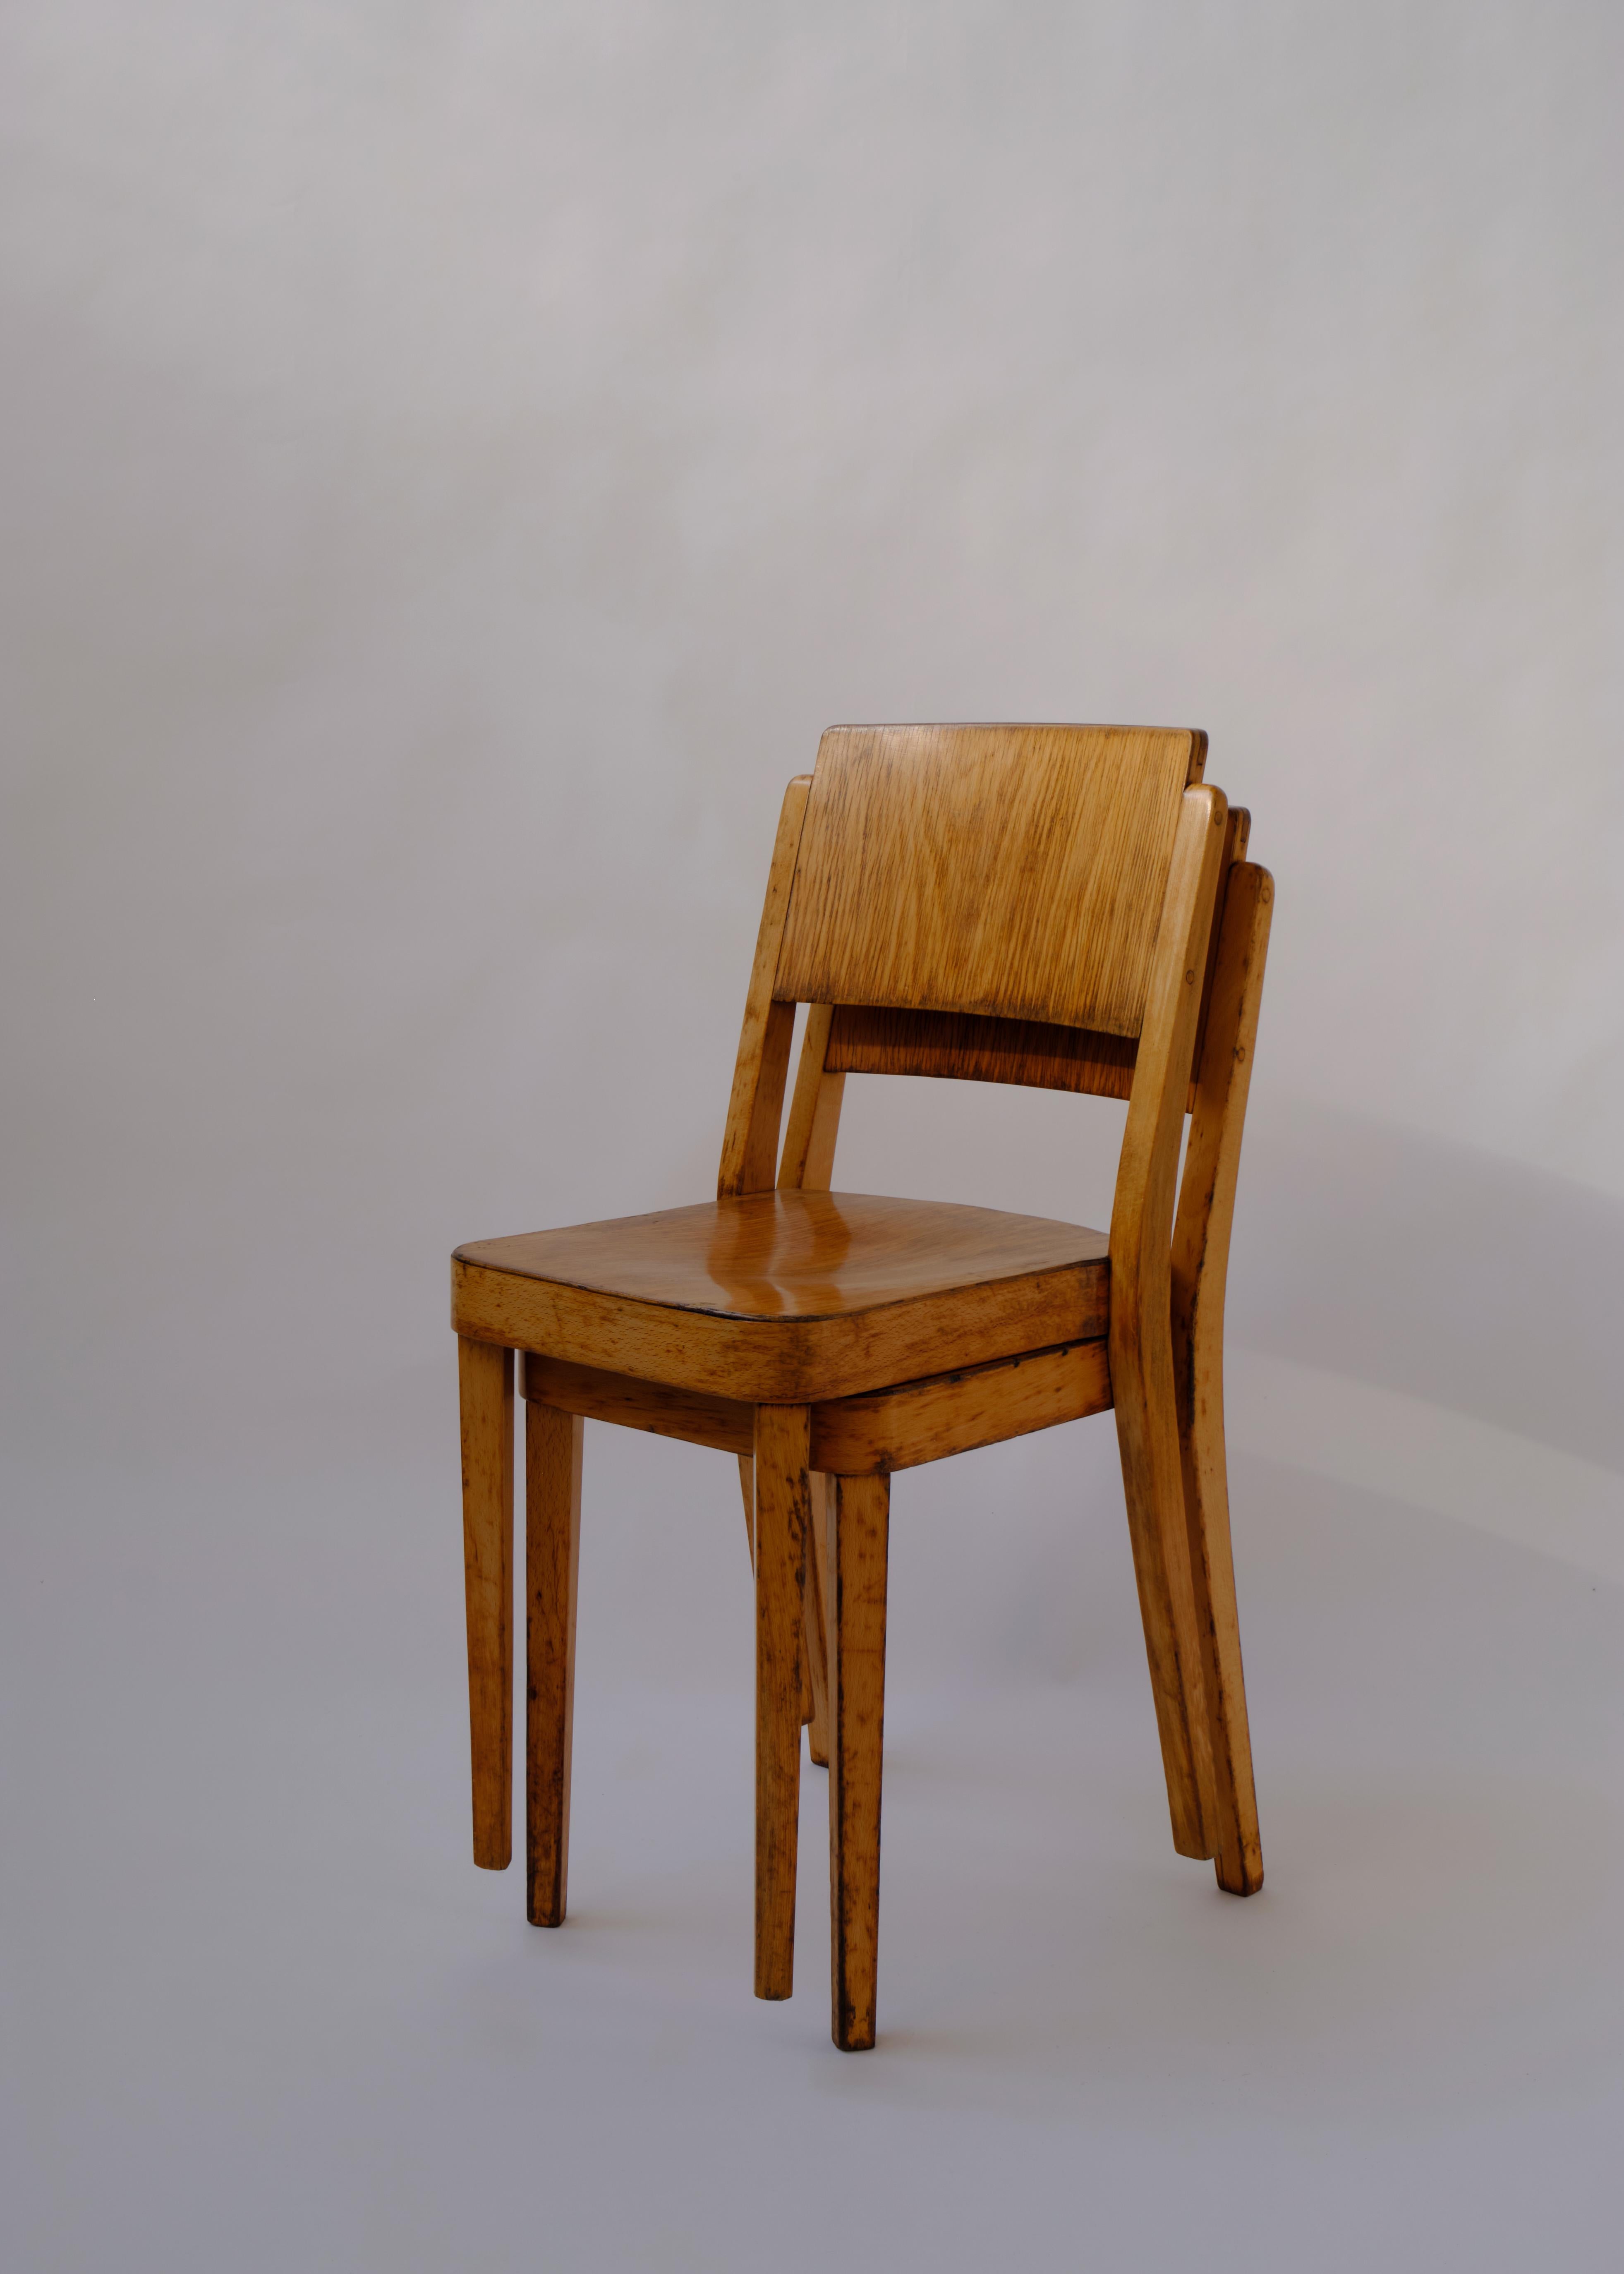 Chaise Montana de Thonet, numéro de modèle A 1250, fabriquée en bouleau massif et en contreplaqué.  Design-Light/One.

Vendu par paire.

Le Label sur les deux chaises a été utilisé pour la première fois en 1922 et les chaises peuvent être vues dans